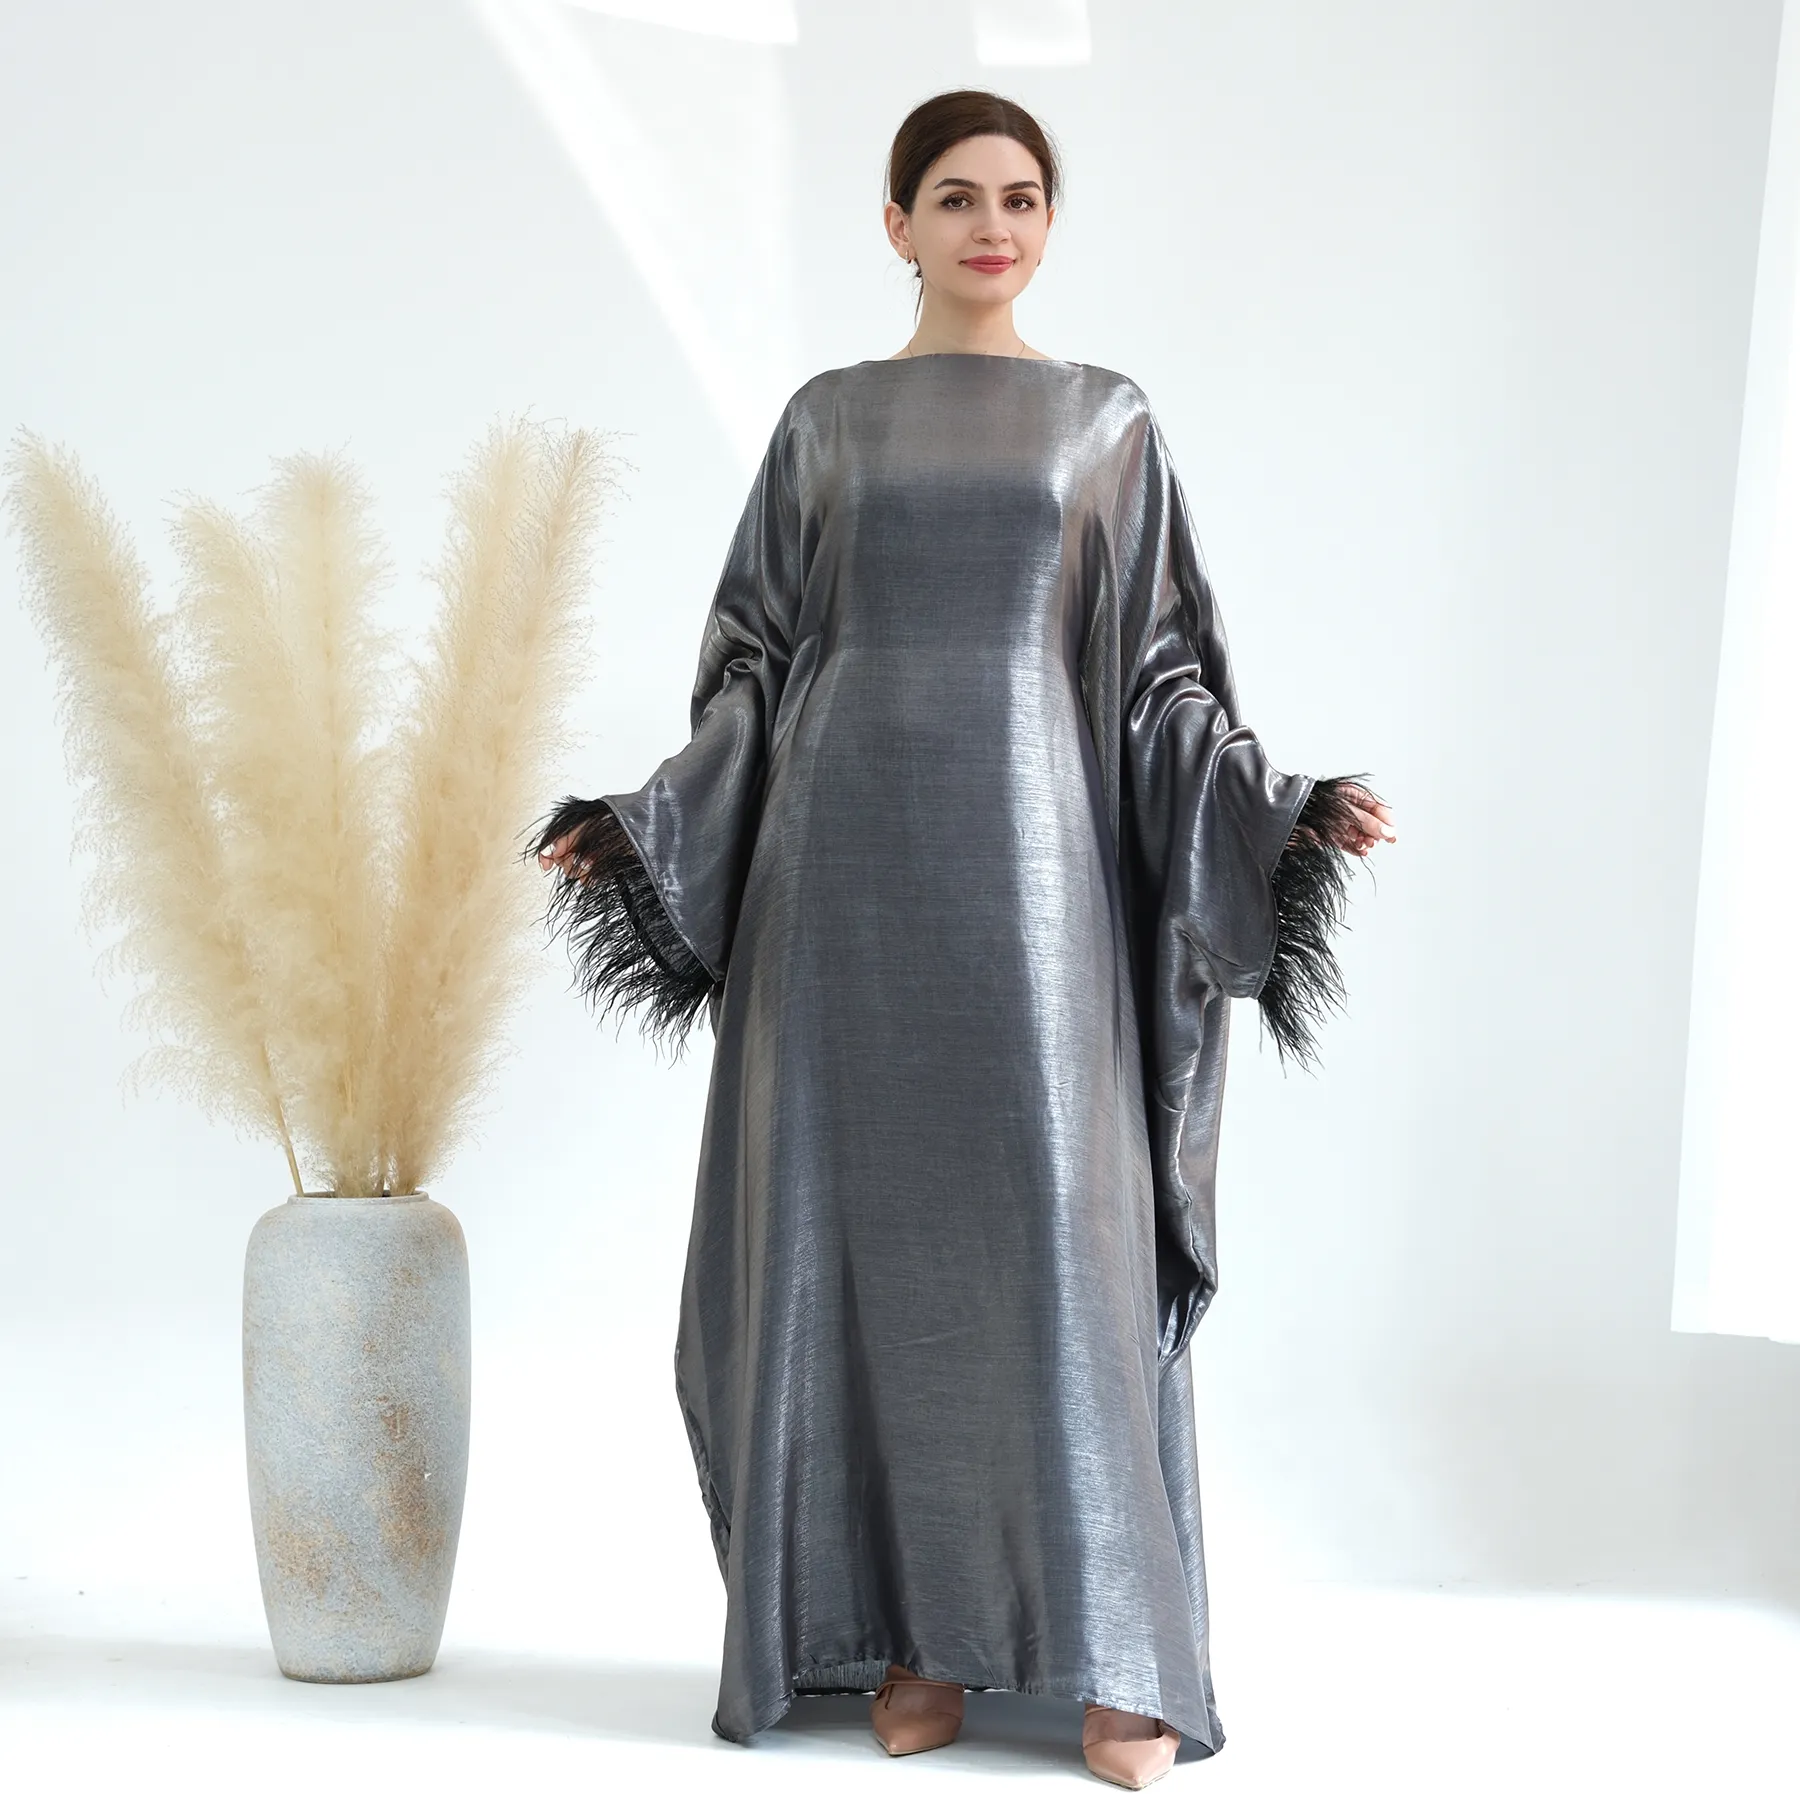 2023 도매 새로운 다채로운 이슬람 의류 여성 Abaya 두바이 겸손한 드레스 내부 벨트 빛나는 캐주얼 드레스